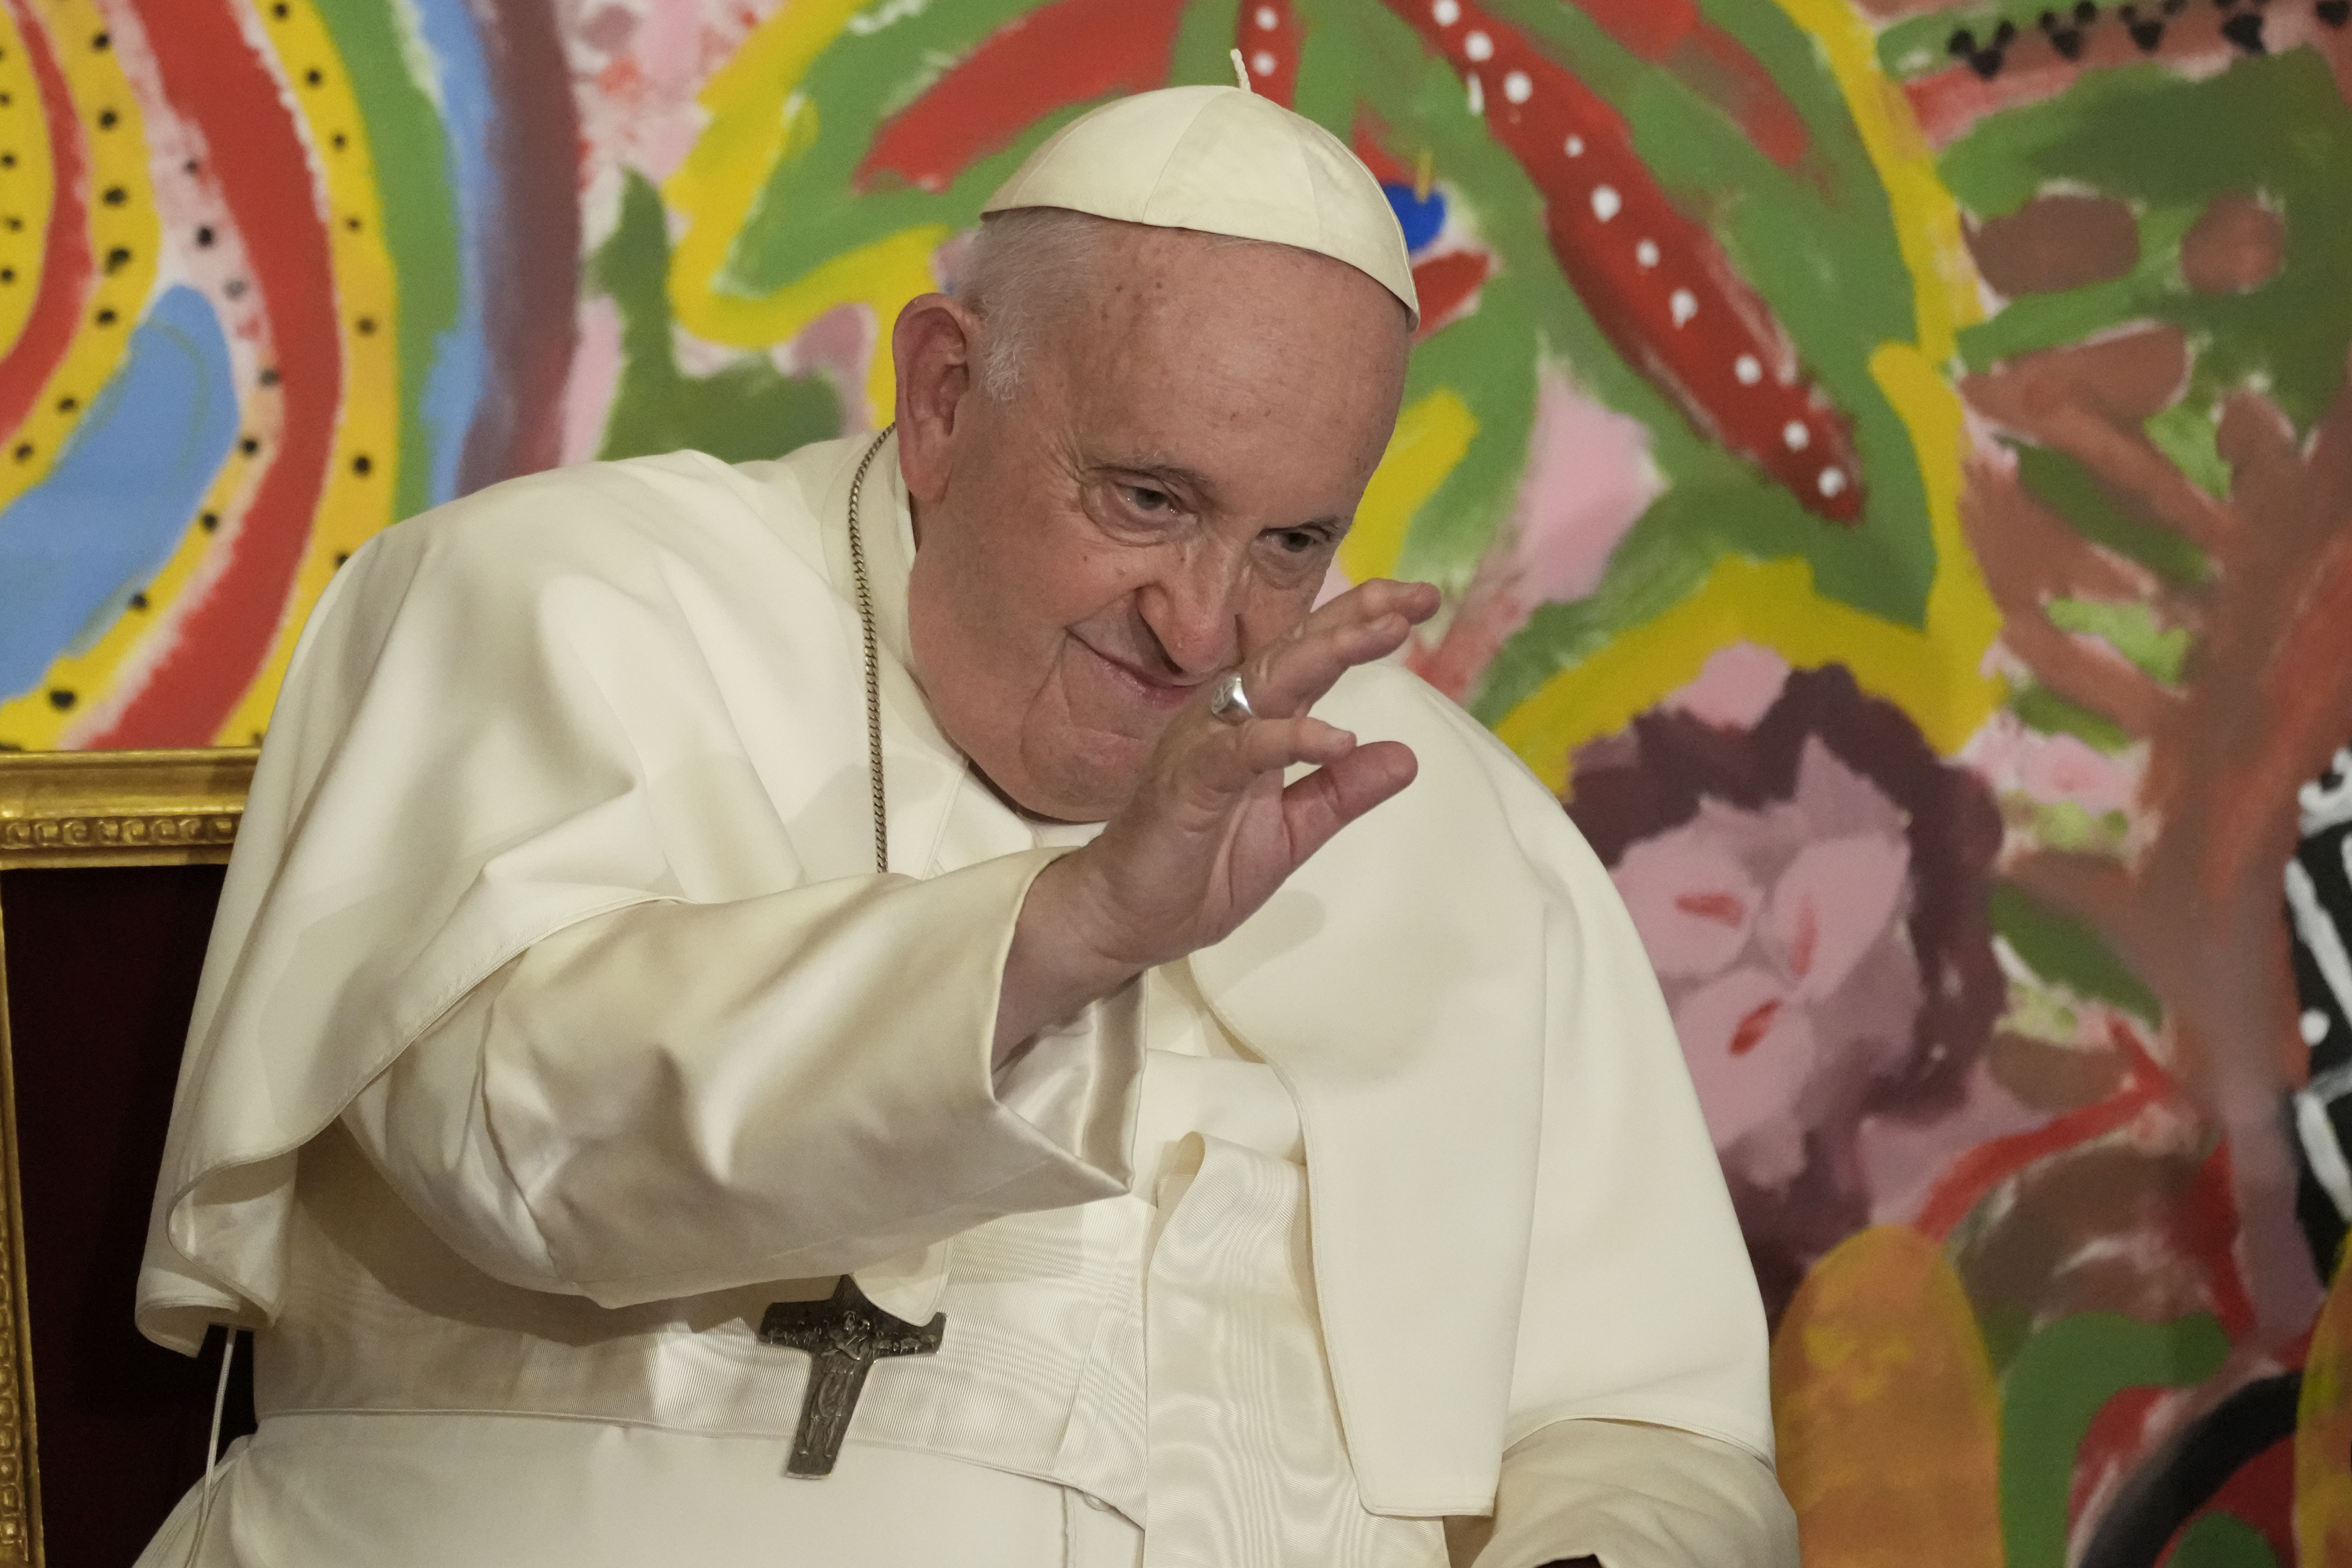 El papa Francisco tuvo una noche "tranquila" luego de ser operado por una hernia abdominal (AP Foto/Andrew Medichini)